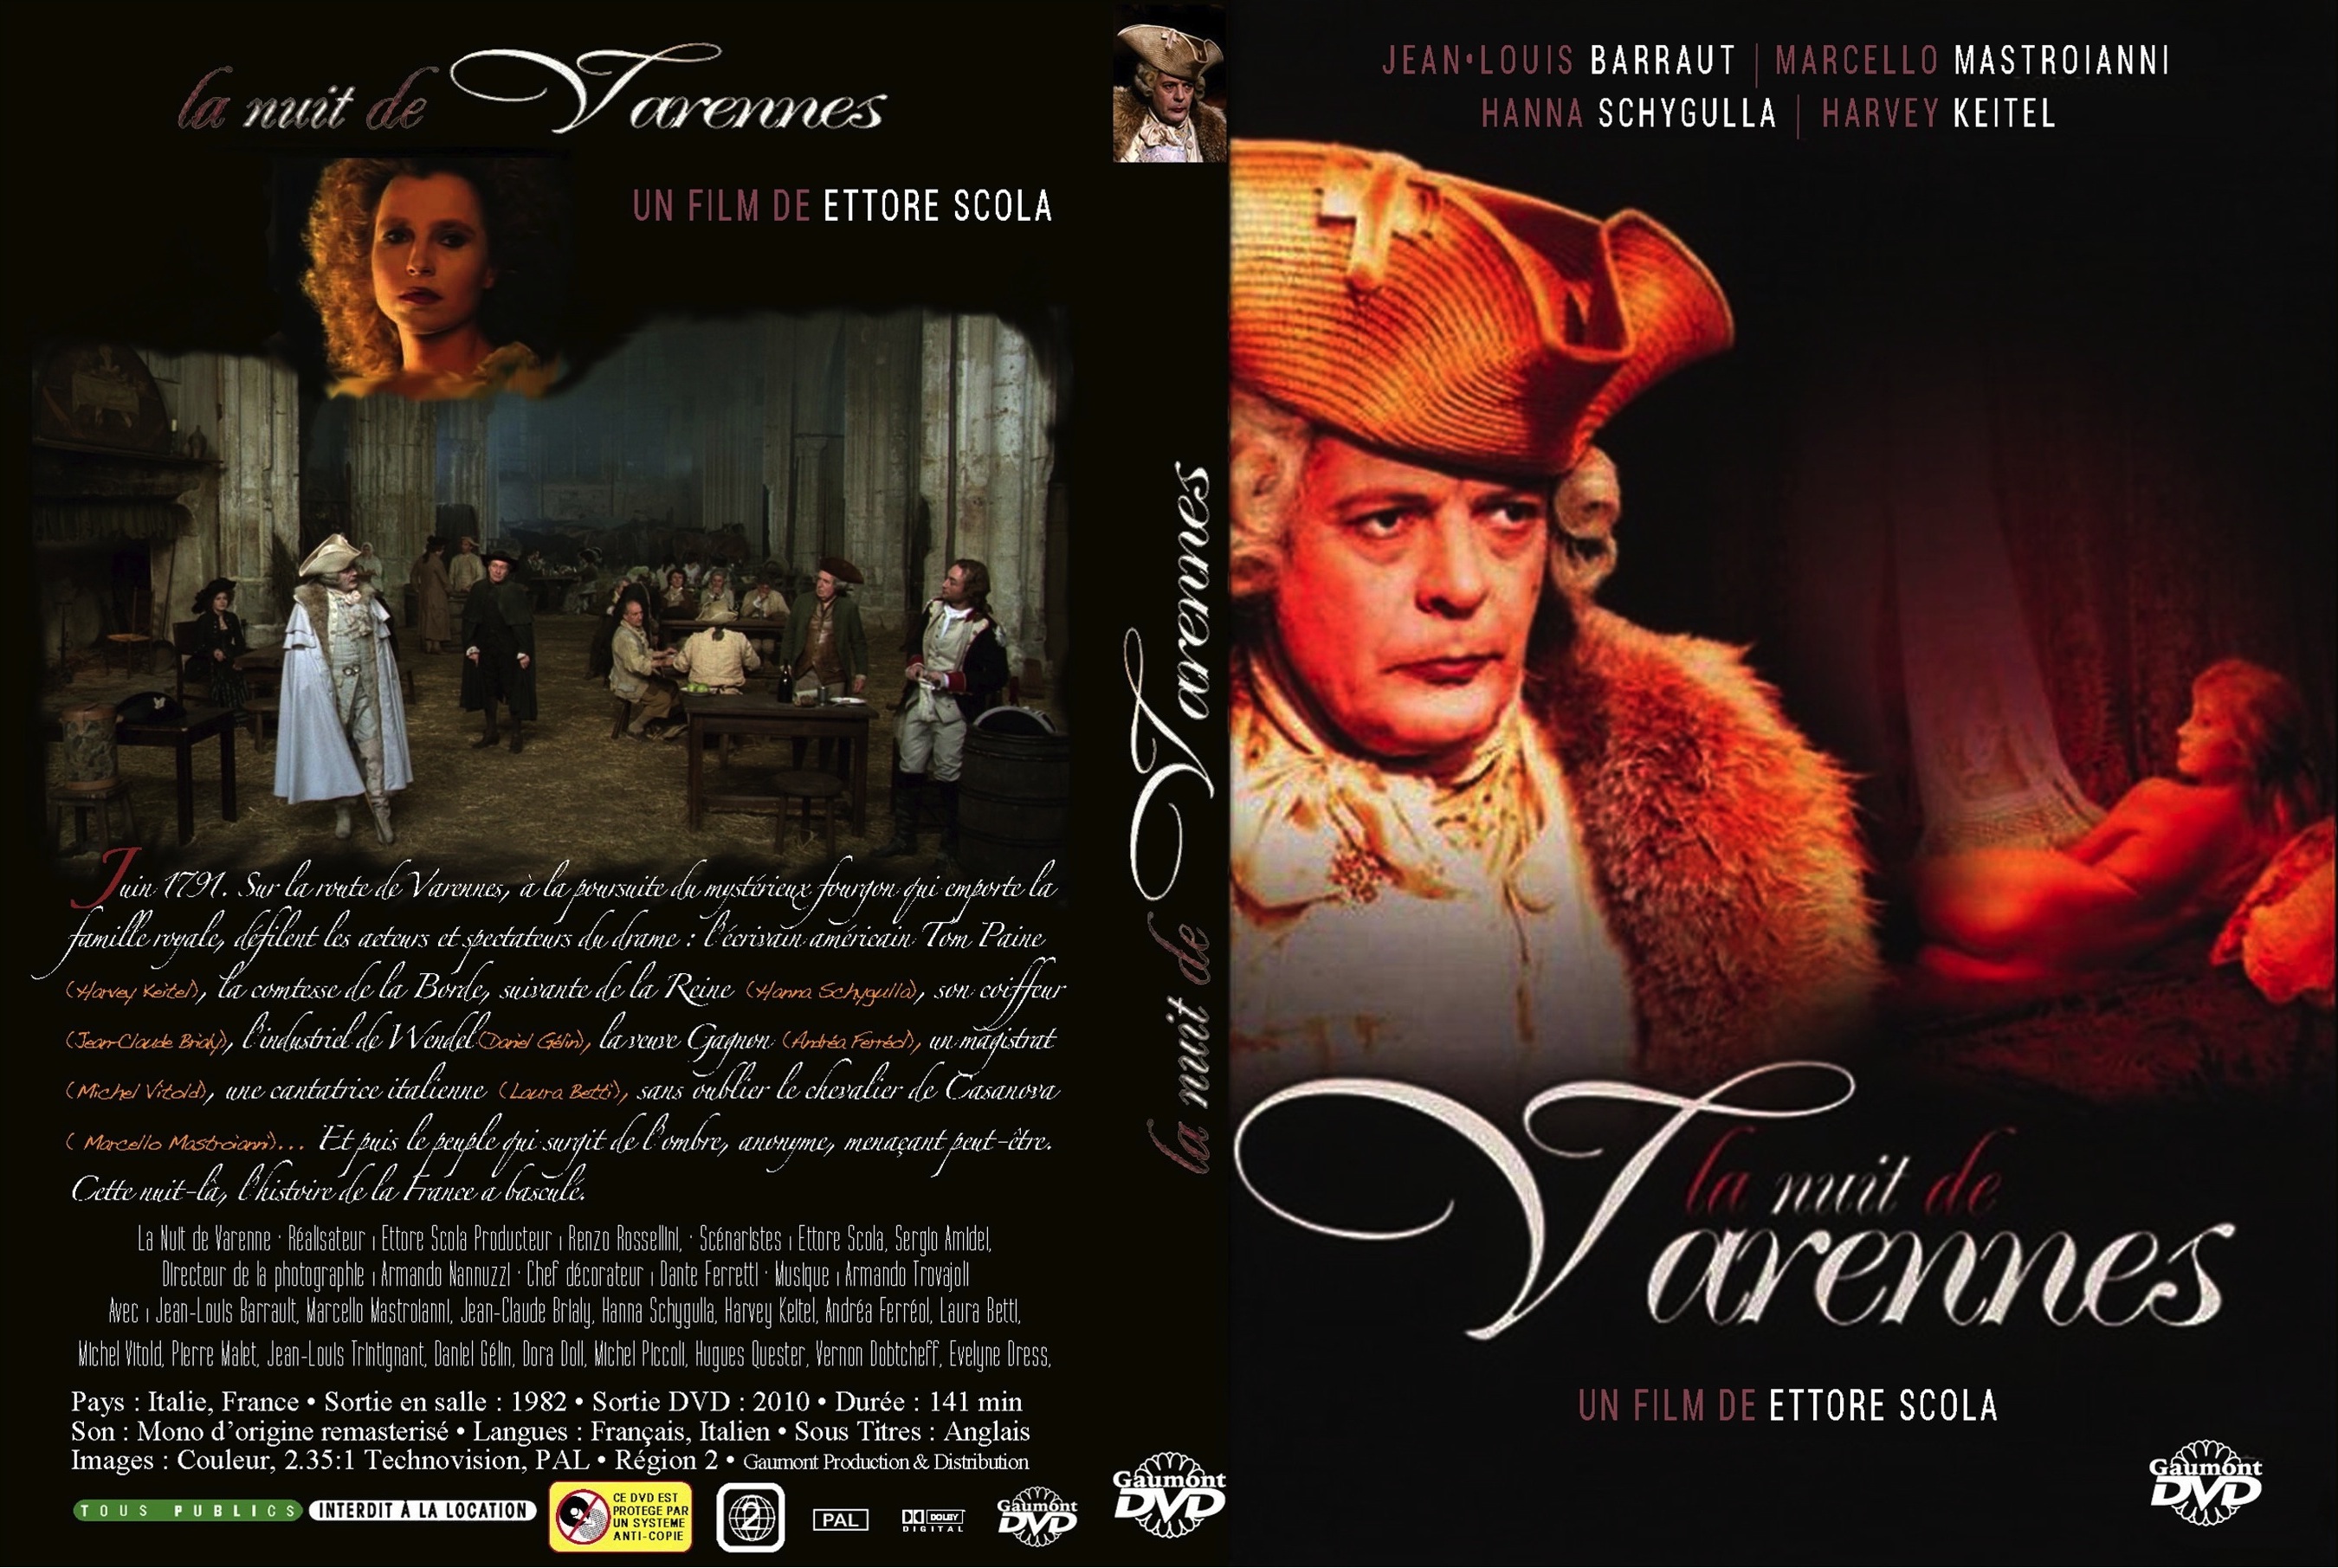 Jaquette DVD La Nuit de Varennes custom